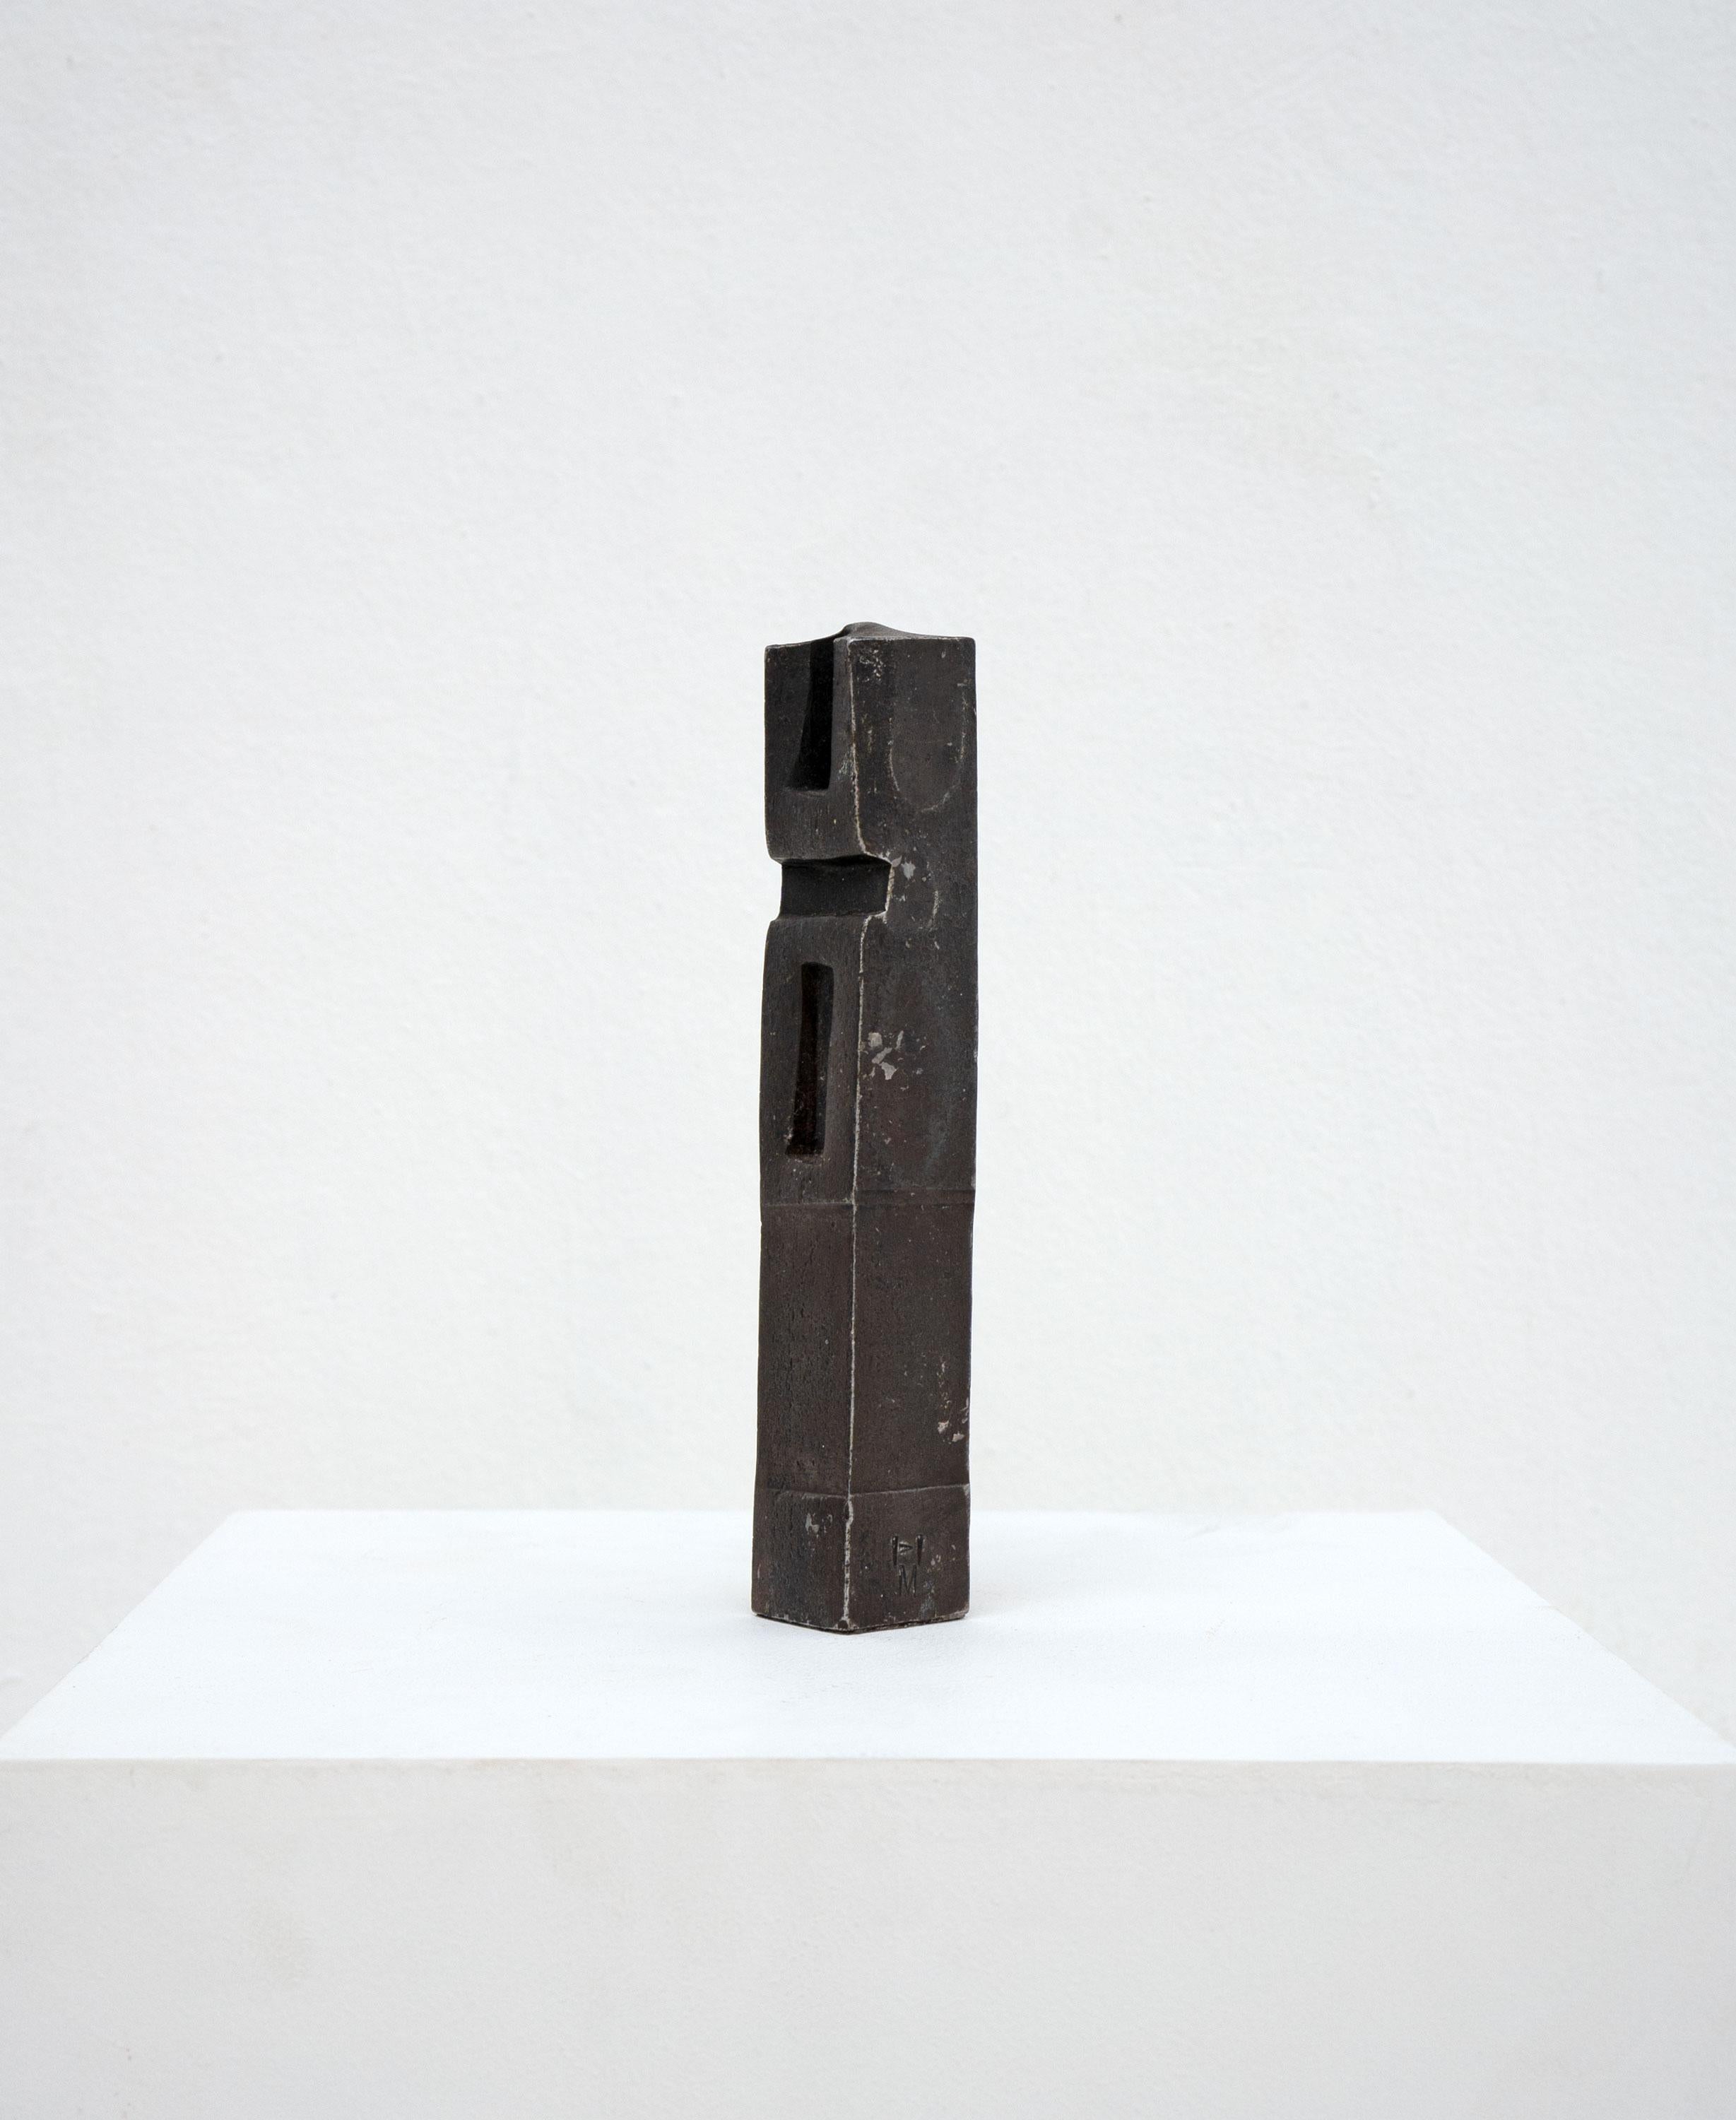 Abstrakte Schmiedeeisen-Skulptur ohne Titel des deutschen Bildhauers Hannes Meinhard (1937-2016). 

Monogramme HM.

Abmessungen (cm, ca.)
Höhe: 20
Breite: 3
Tiefe: 3